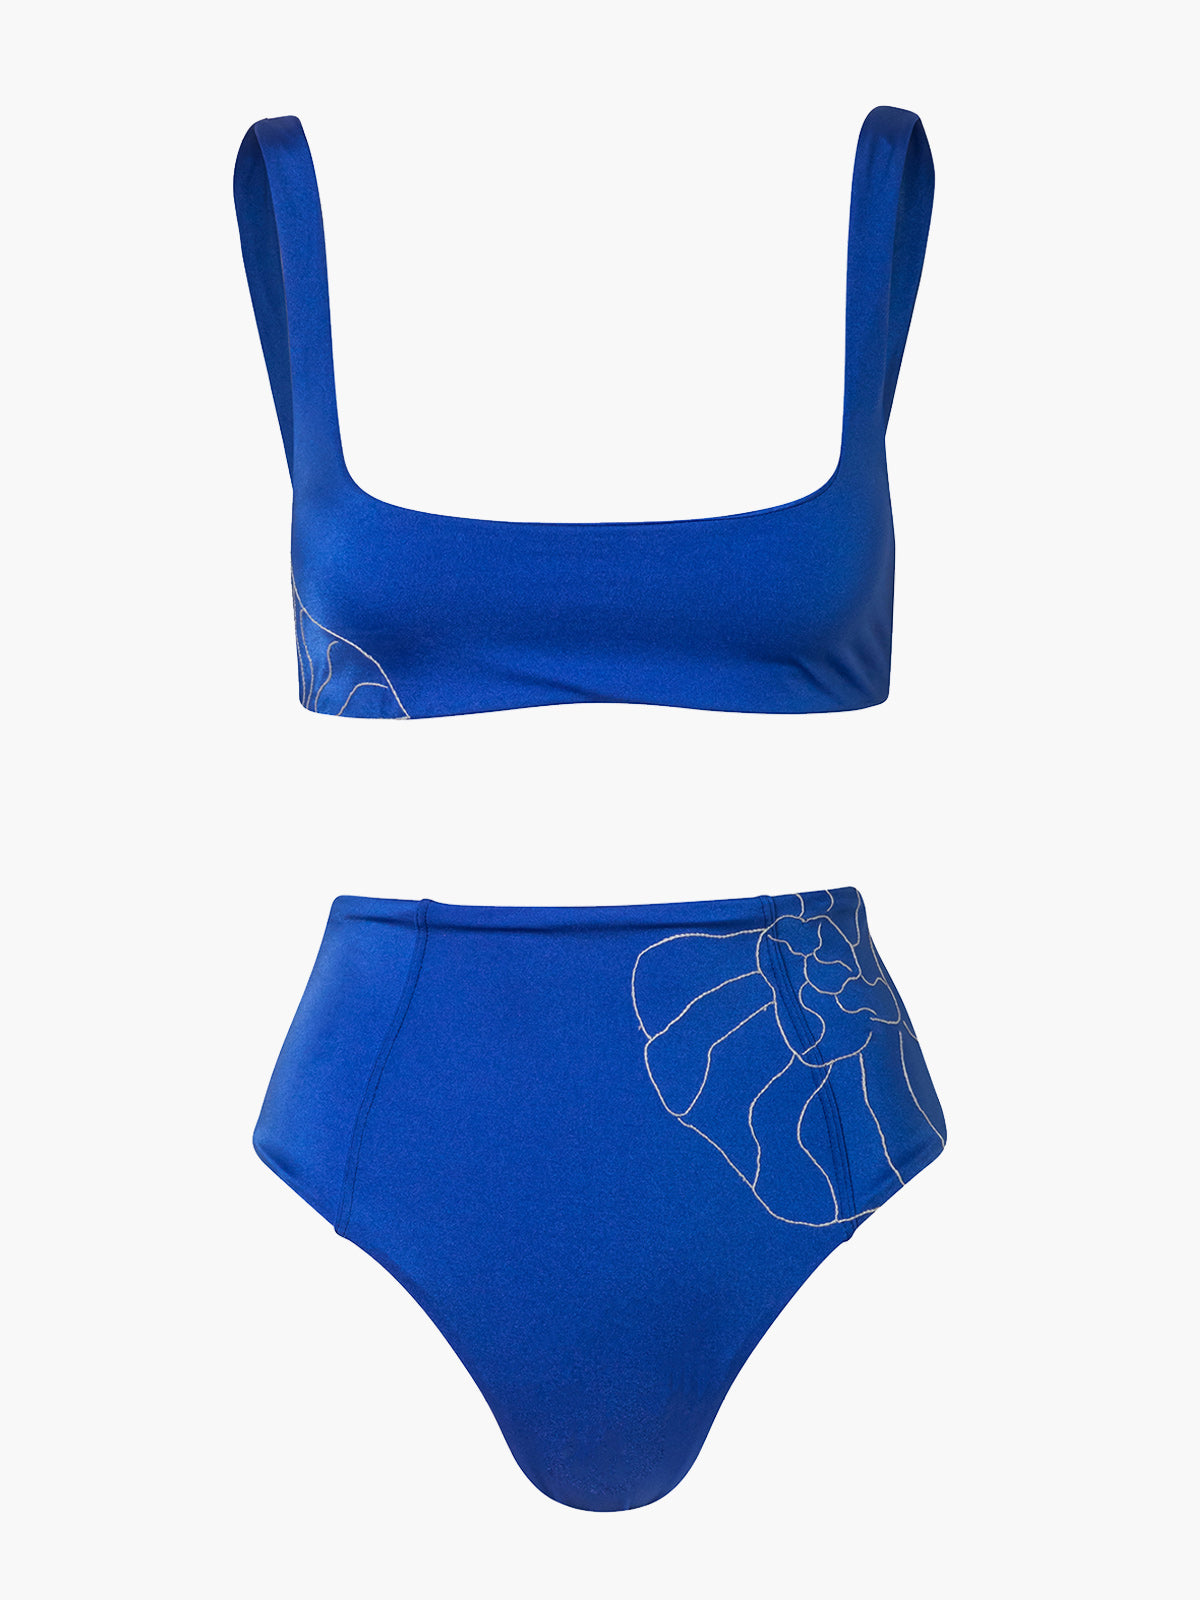 Embroidered Castiglioncello Bikini Set | Electric Blue